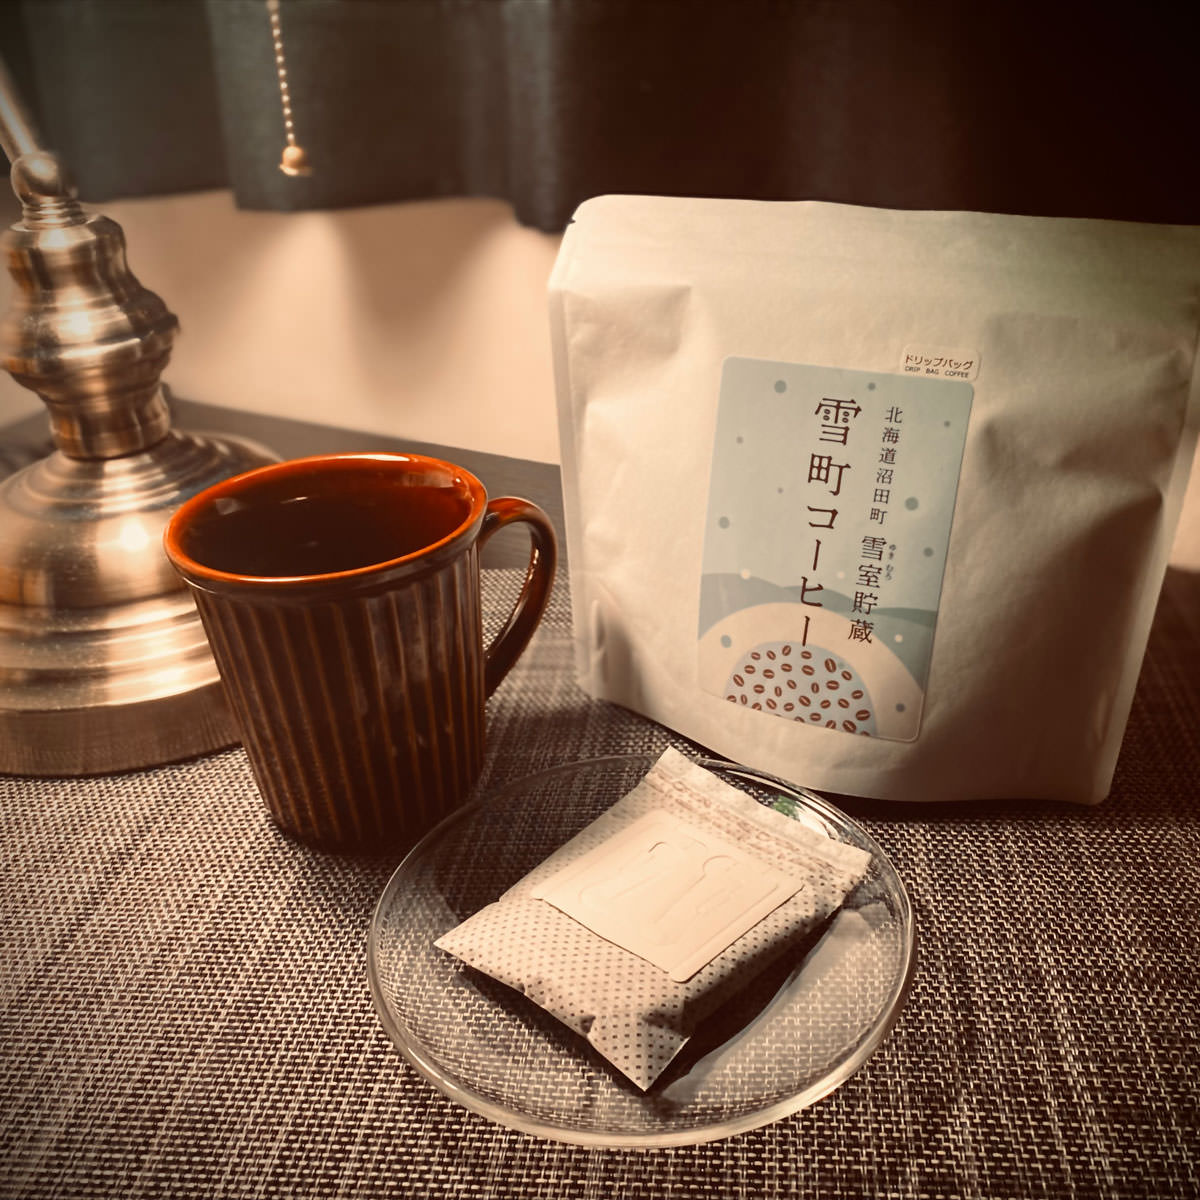 北海道 雪室貯蔵 雪町コーヒー ドリップパック コーヒー ドリップバッグ レギュラーコーヒー エチオピア産 アラビカ生豆 珈琲 低温熟成